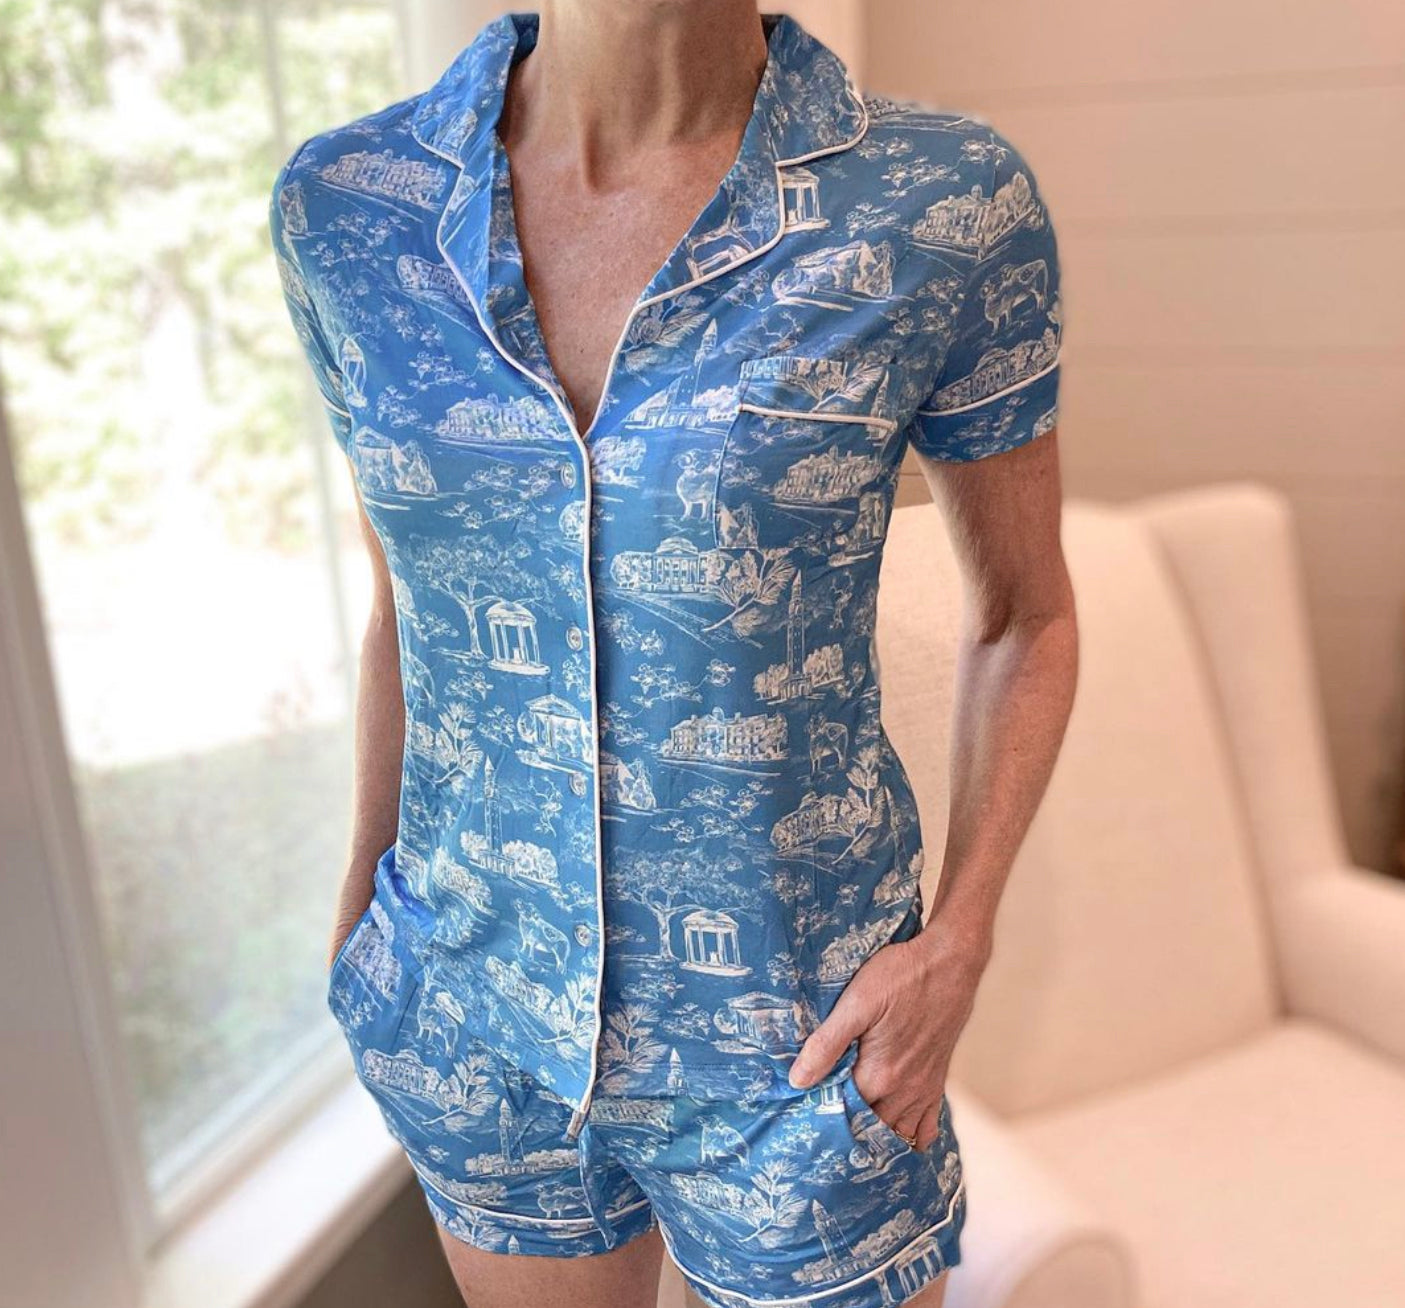 Tar Heel Toile Pajamas in Carolina Blue Short Sleeves and Shorts